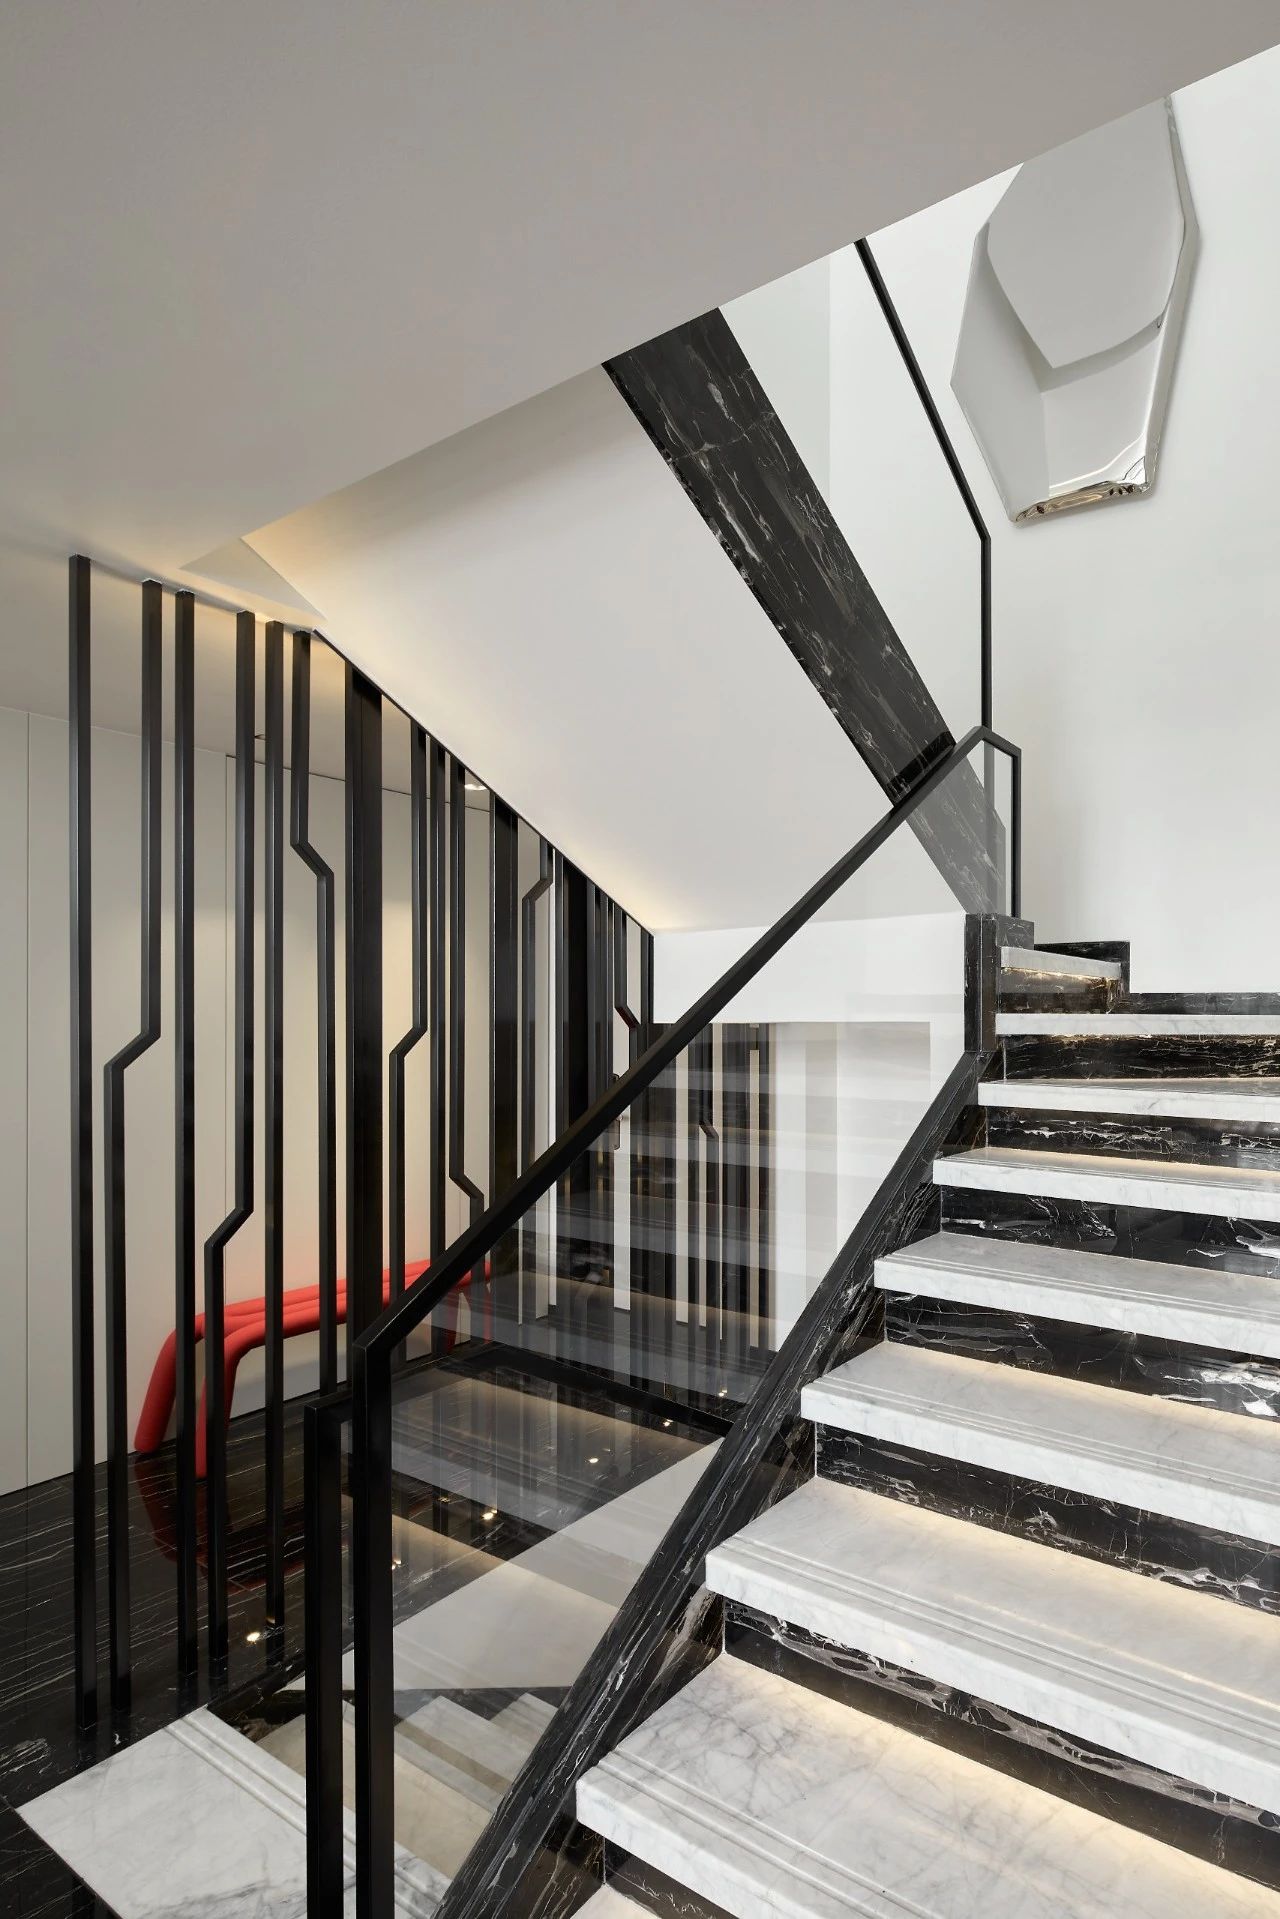 小户型阁楼楼梯装修设计效果图 – 设计本装修效果图